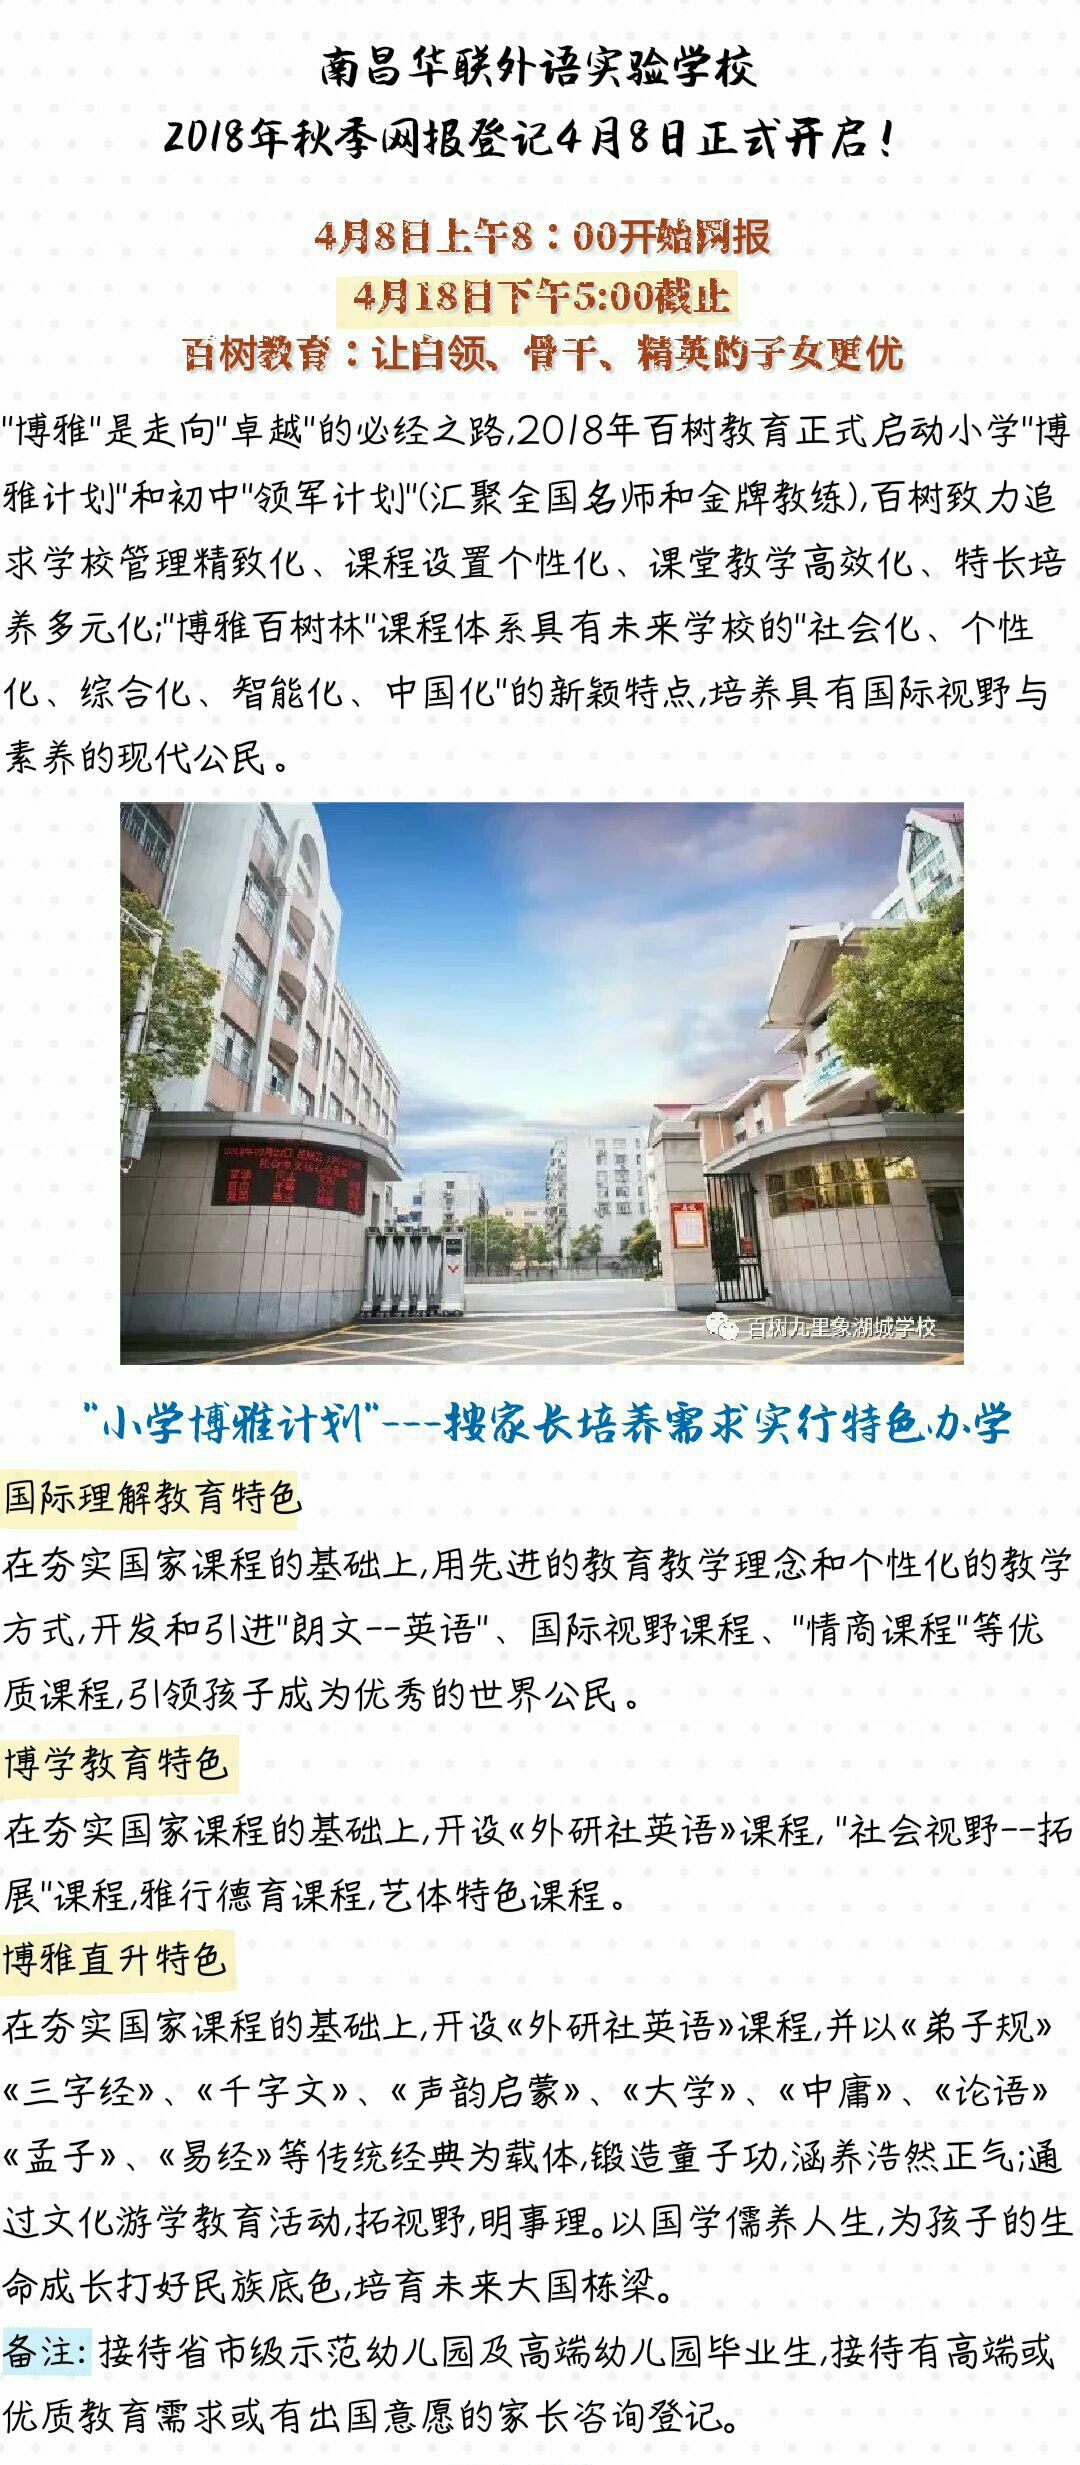 南昌华联外语实验学校2018秋季一年级新生报名通知